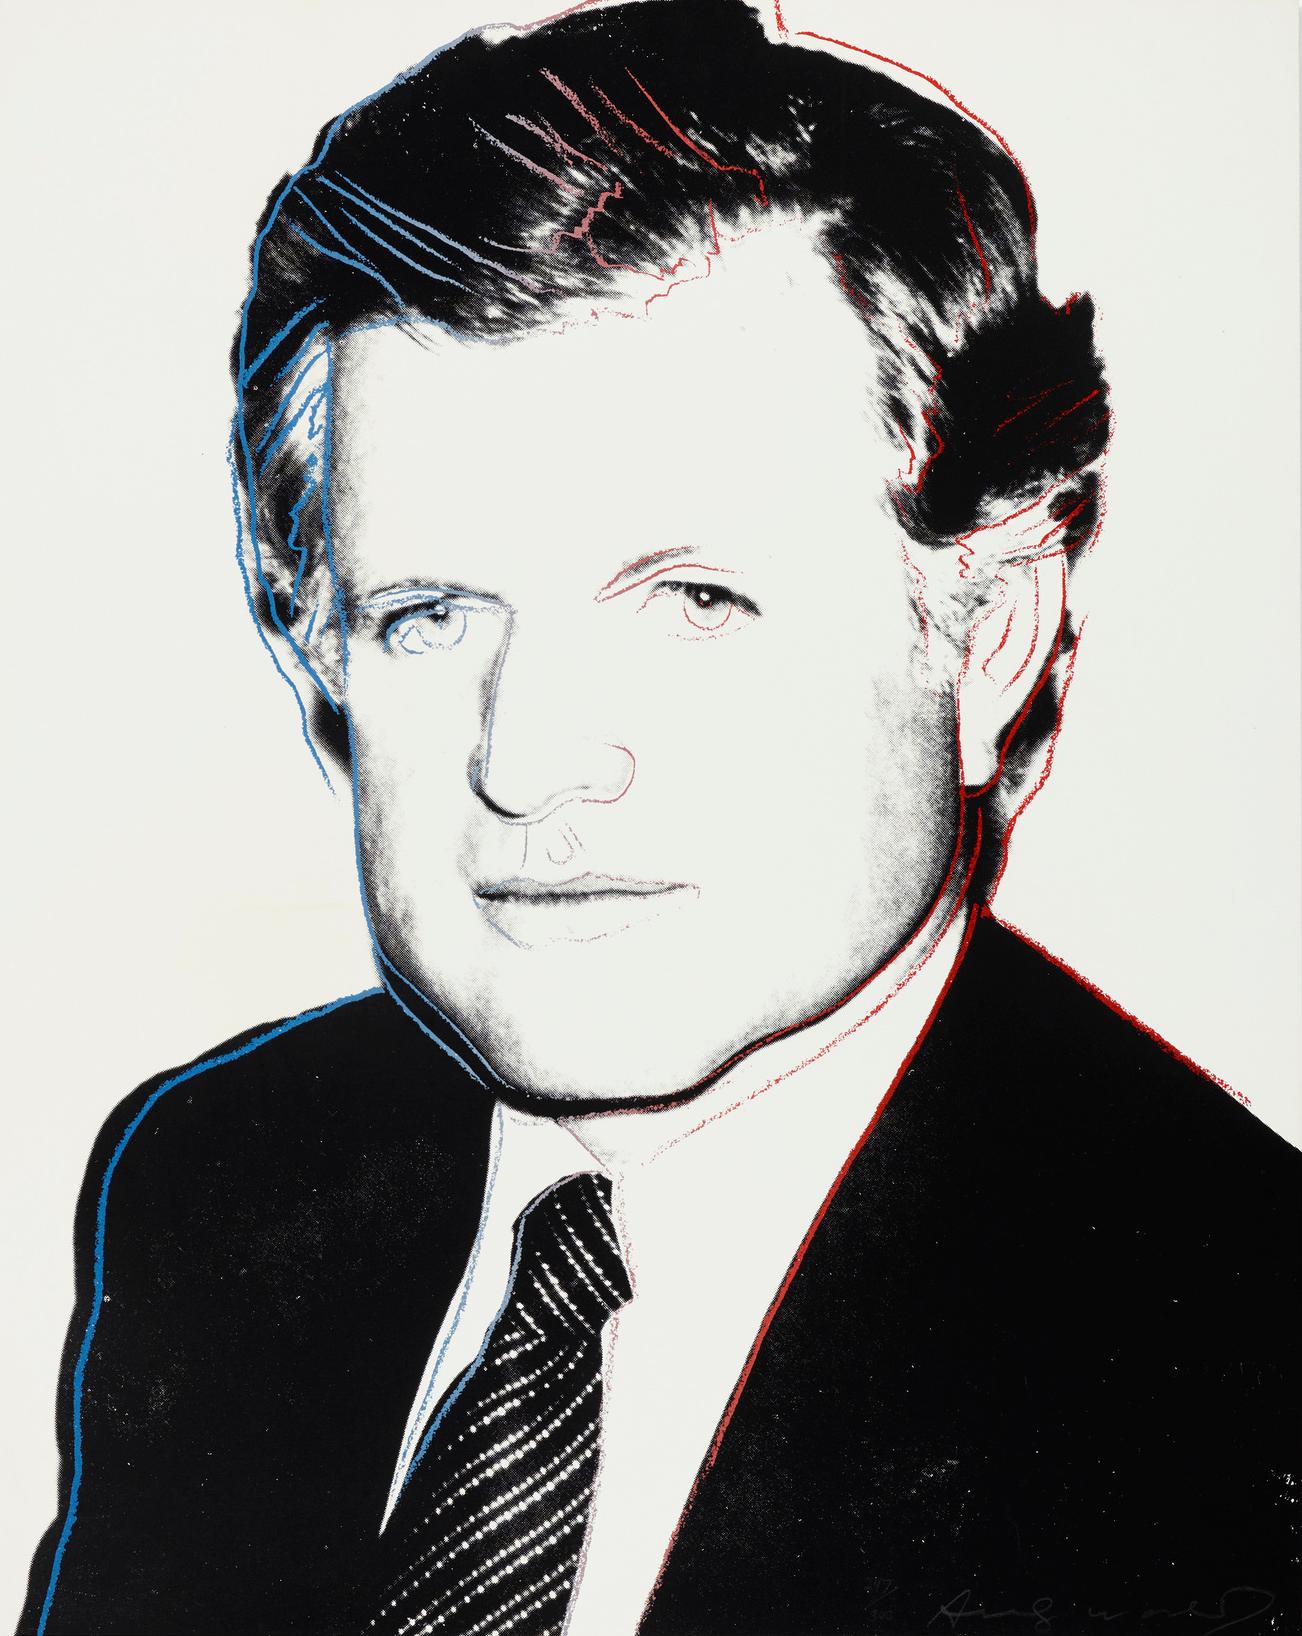 ANDY WARHOL (1928-1987)

Edward Kennedy" d'Andy Warhol, 1980, est une sérigraphie en couleurs avec de la poussière de diamant sur Lenox Museum Board. Elle est signée et numérotée en bas à droite "247/300 Andy Warhol". Cet ouvrage est le numéro 247